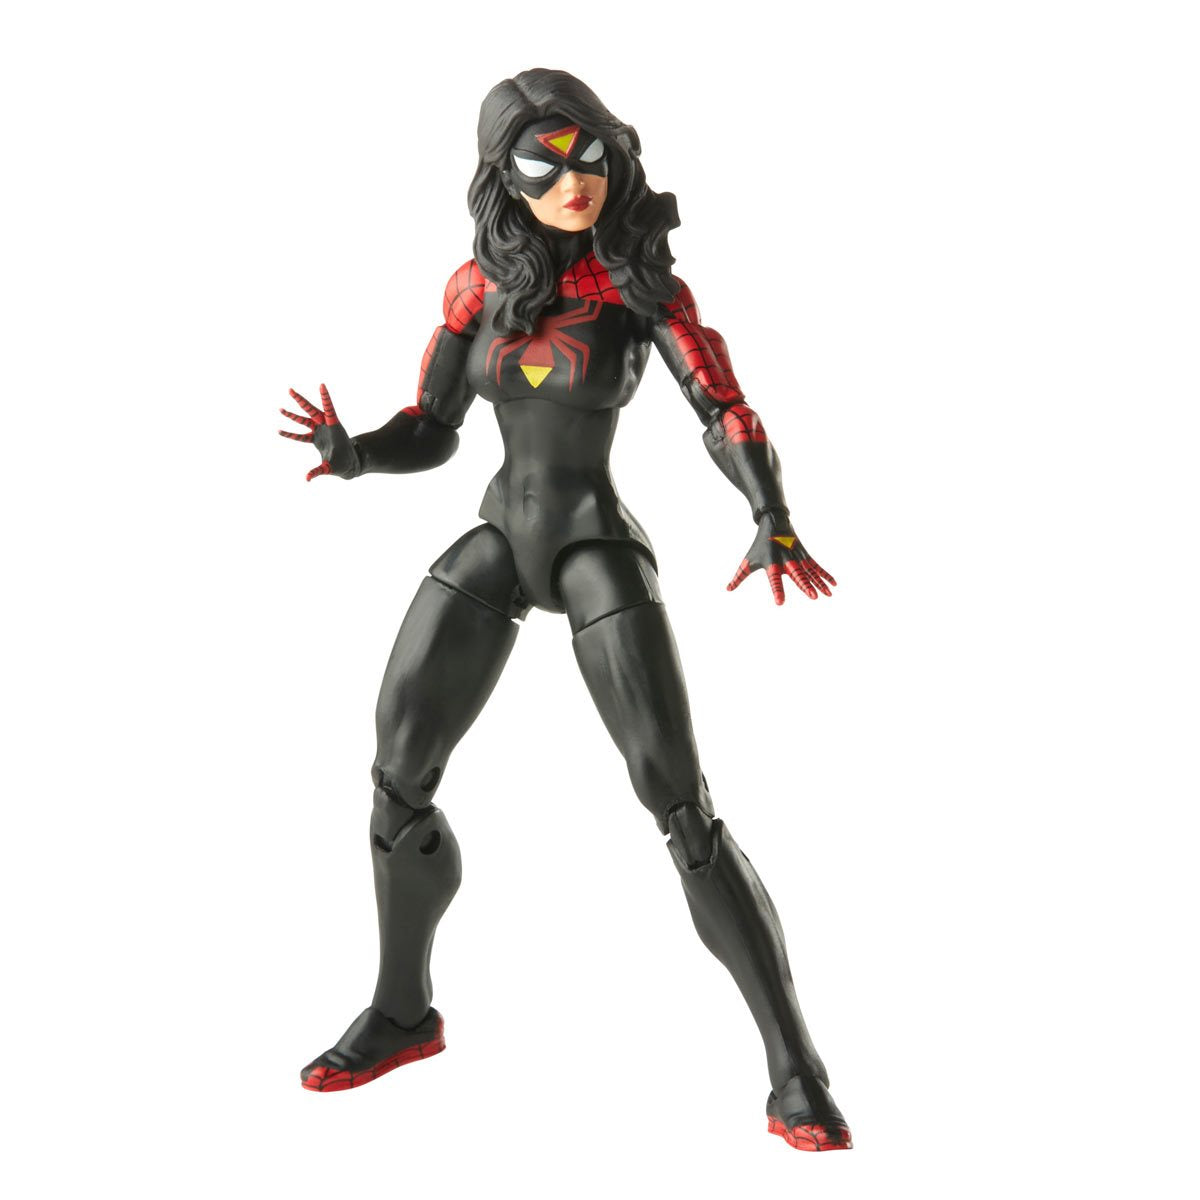 Spider-Man Retro Marvel Legends Jessica Drew Spider-Woman Action Figure